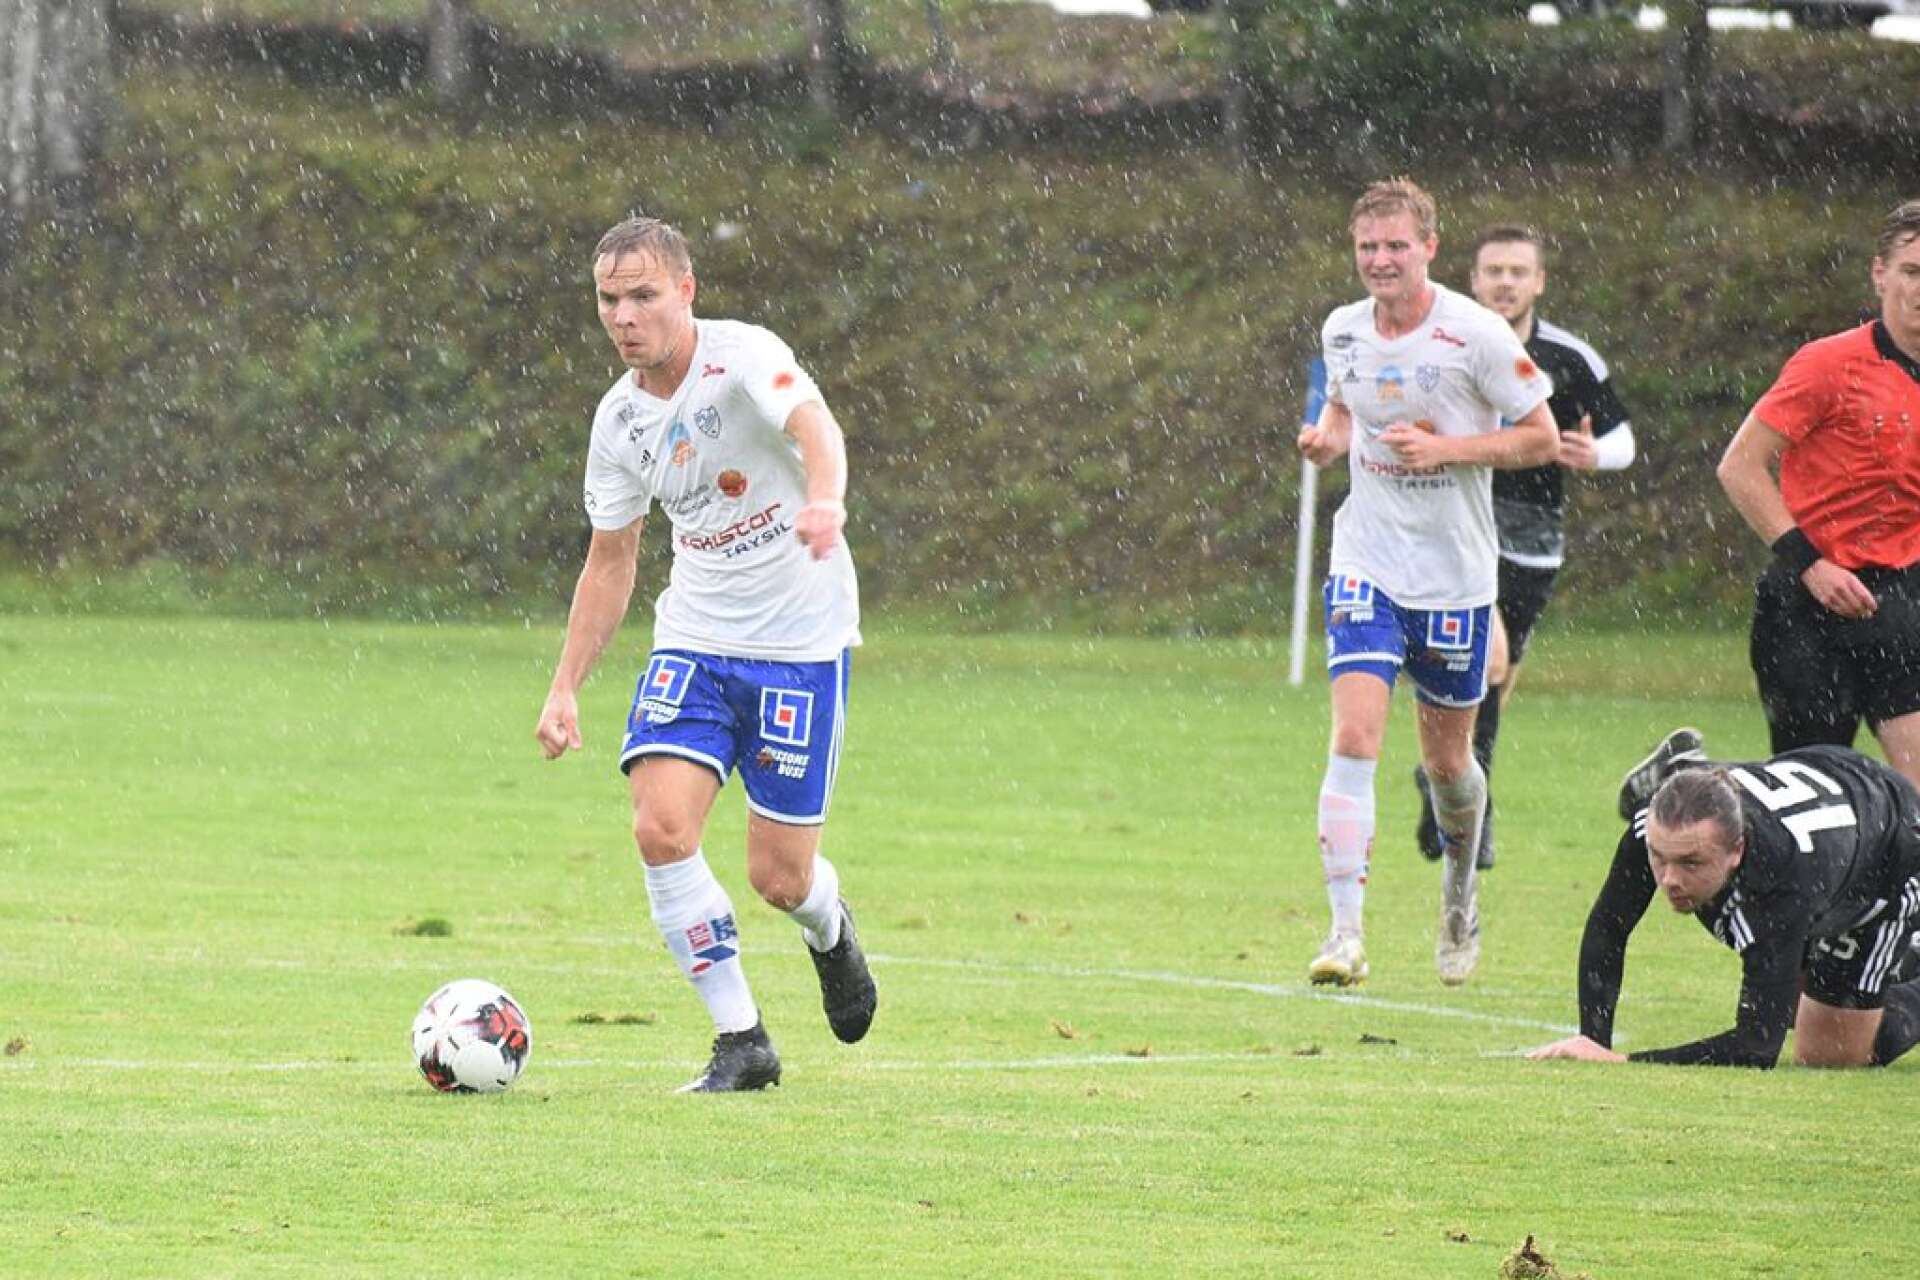 Tobias Stangnes (närmast) och Mattias Ellström finns troligtvis inte med i årets upplaga av IFK Sunne.